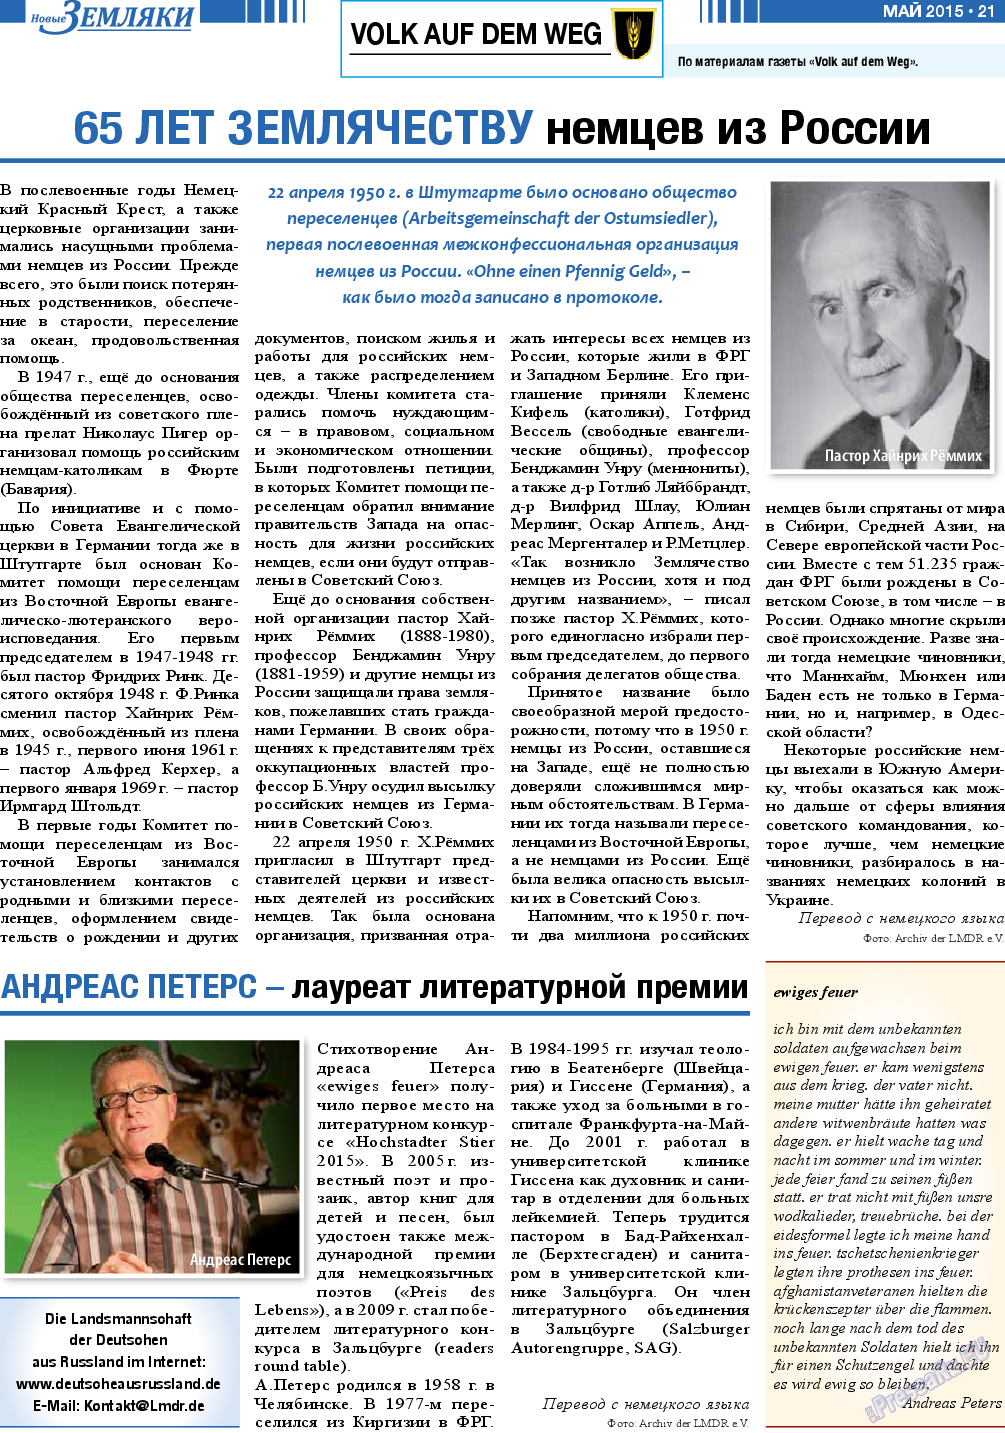 Новые Земляки, газета. 2015 №5 стр.21